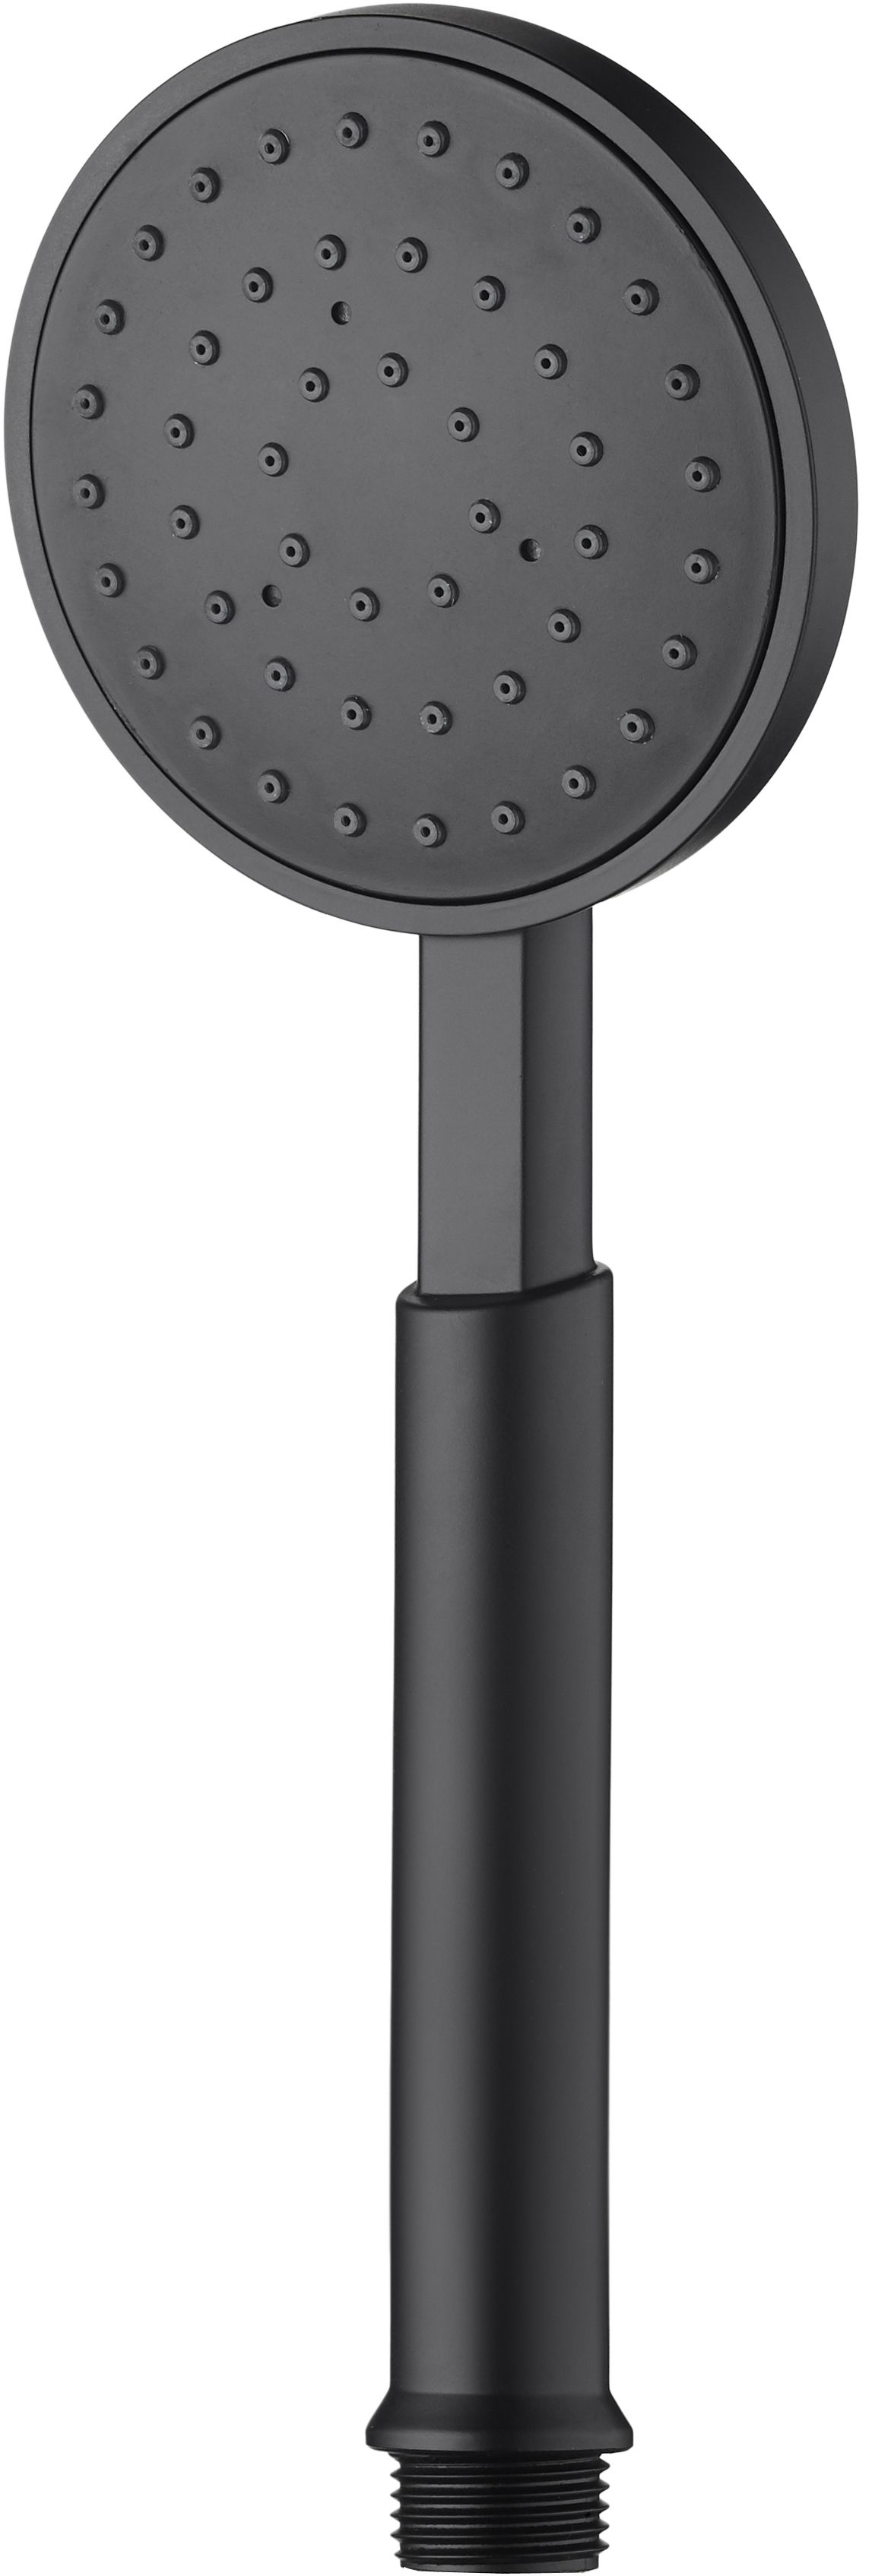 Słuchawka prysznicowa 1-funkcyjna - XDCT0SLZ1 - Główne zdjęcie produktowe